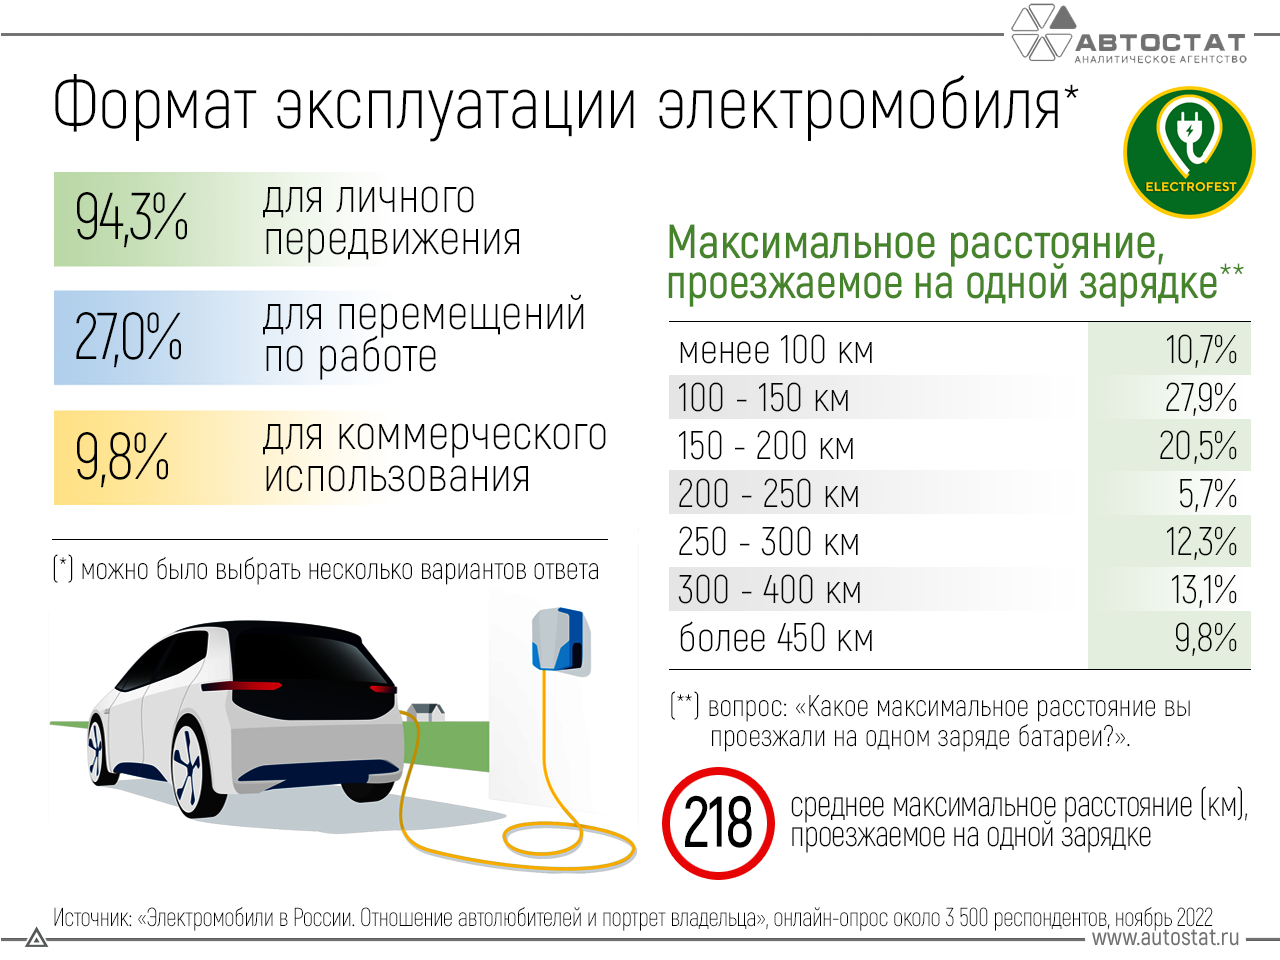 Подробнее о статье Сколько на одной зарядке проезжают электромобили в России